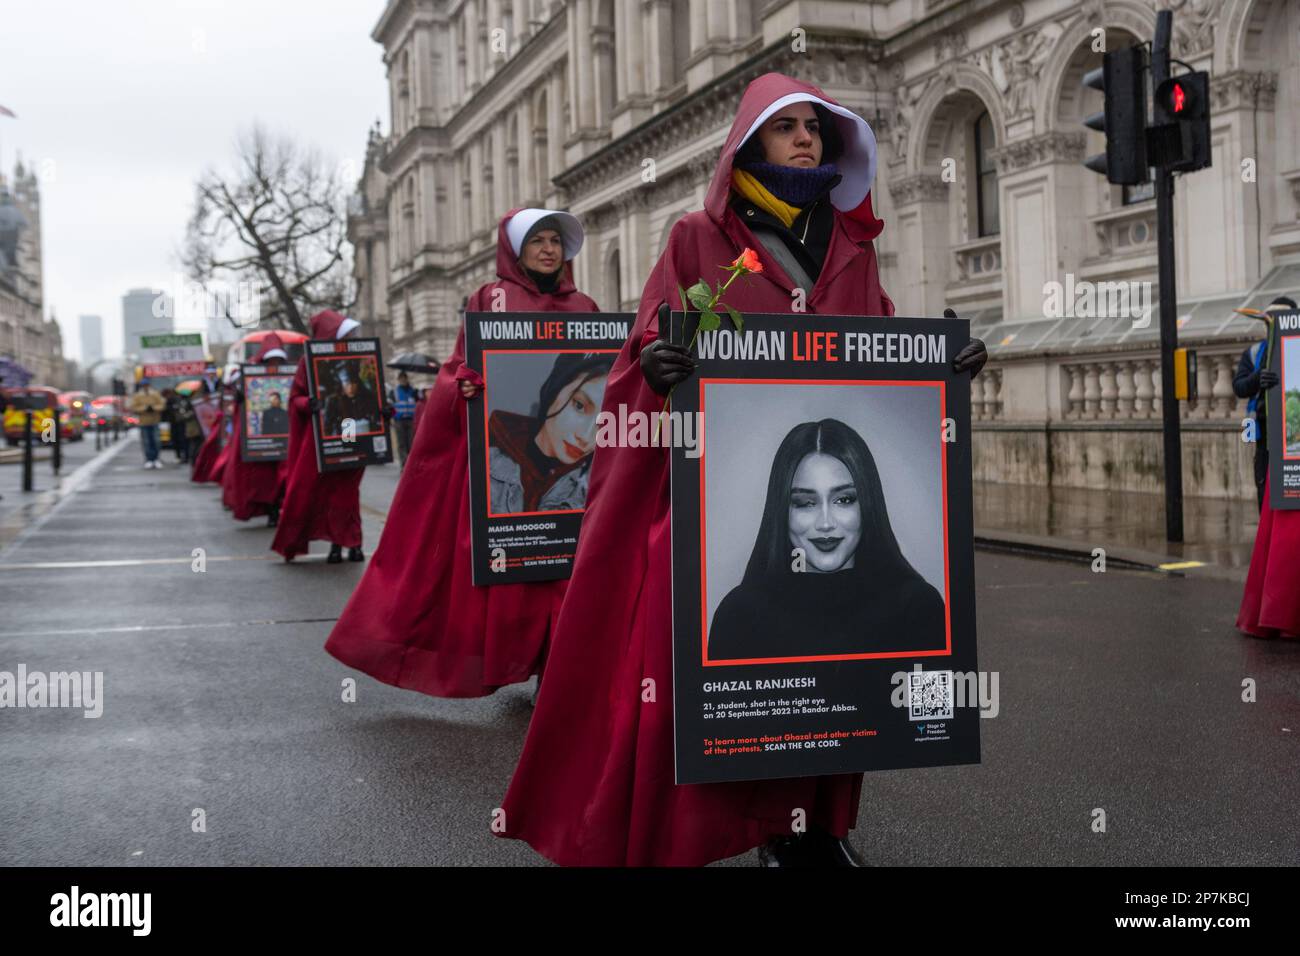 London/UK 08. FEBRUAR 2023 der Internationale Frauentag wurde von einem stummen marsch durch Central London zur Unterstützung iranischer Frauen geprägt. Sie enden bei der iranischen Botschaft, wo sie ihre äußeren roten Kleidungsstücke ablegten und hinwarfen. Aubrey Fagon/Alamy Live News Stockfoto